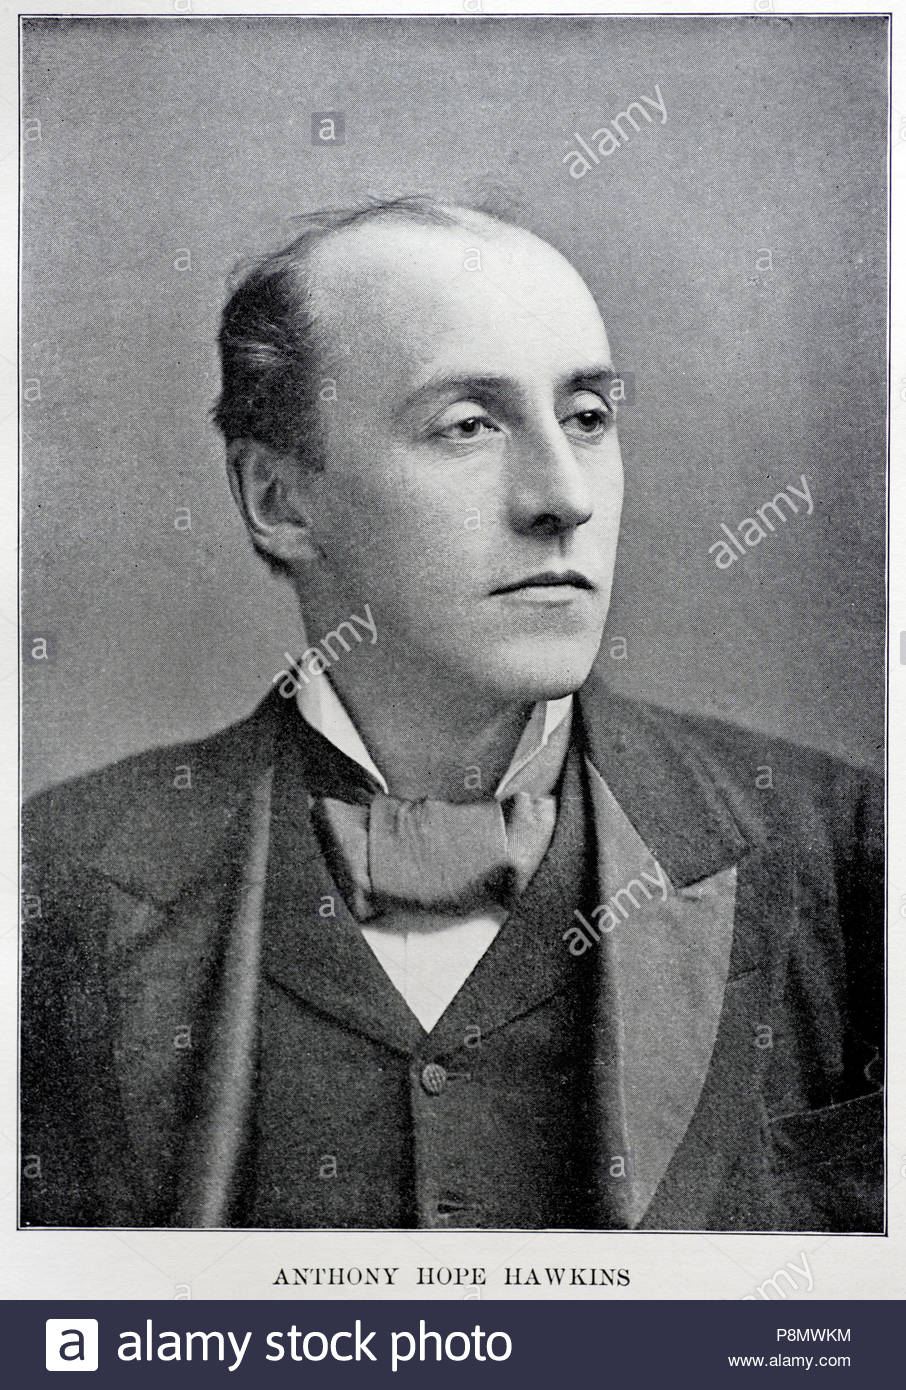 Anthony Hope Hawkins ritratto, 1863 - 1933, era un romanziere inglese e drammaturgo, immagine dal c1900 Foto Stock